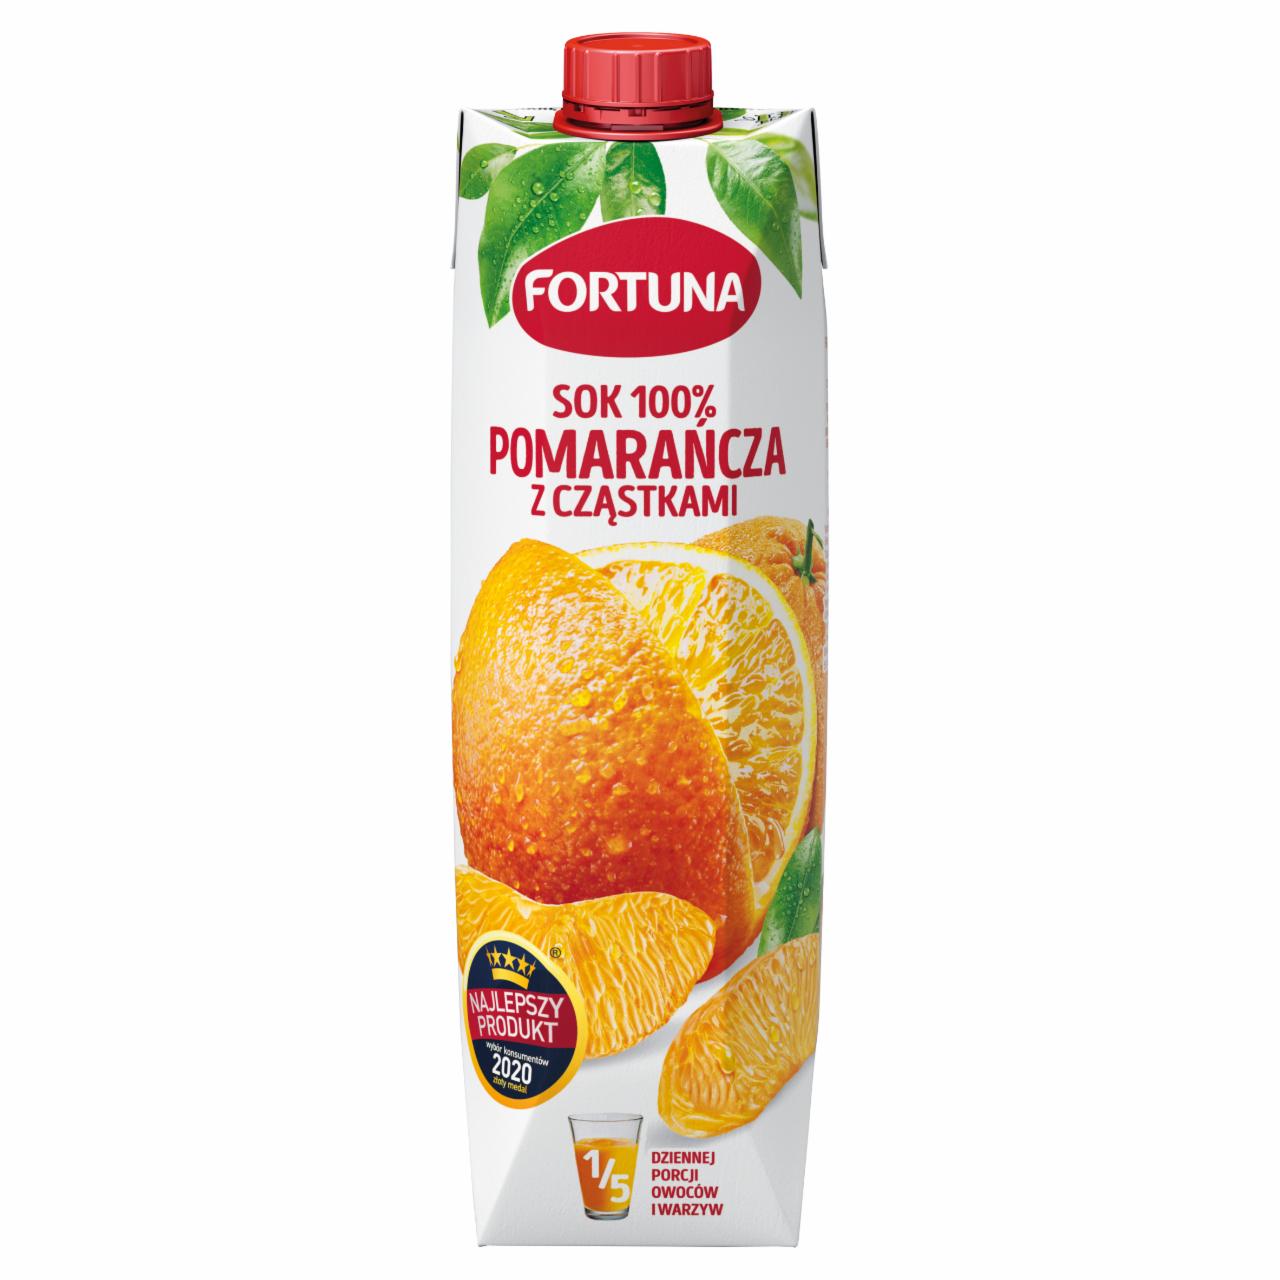 Zdjęcia - Fortuna Sok 100 % pomarańcza z cząstkami 1 l